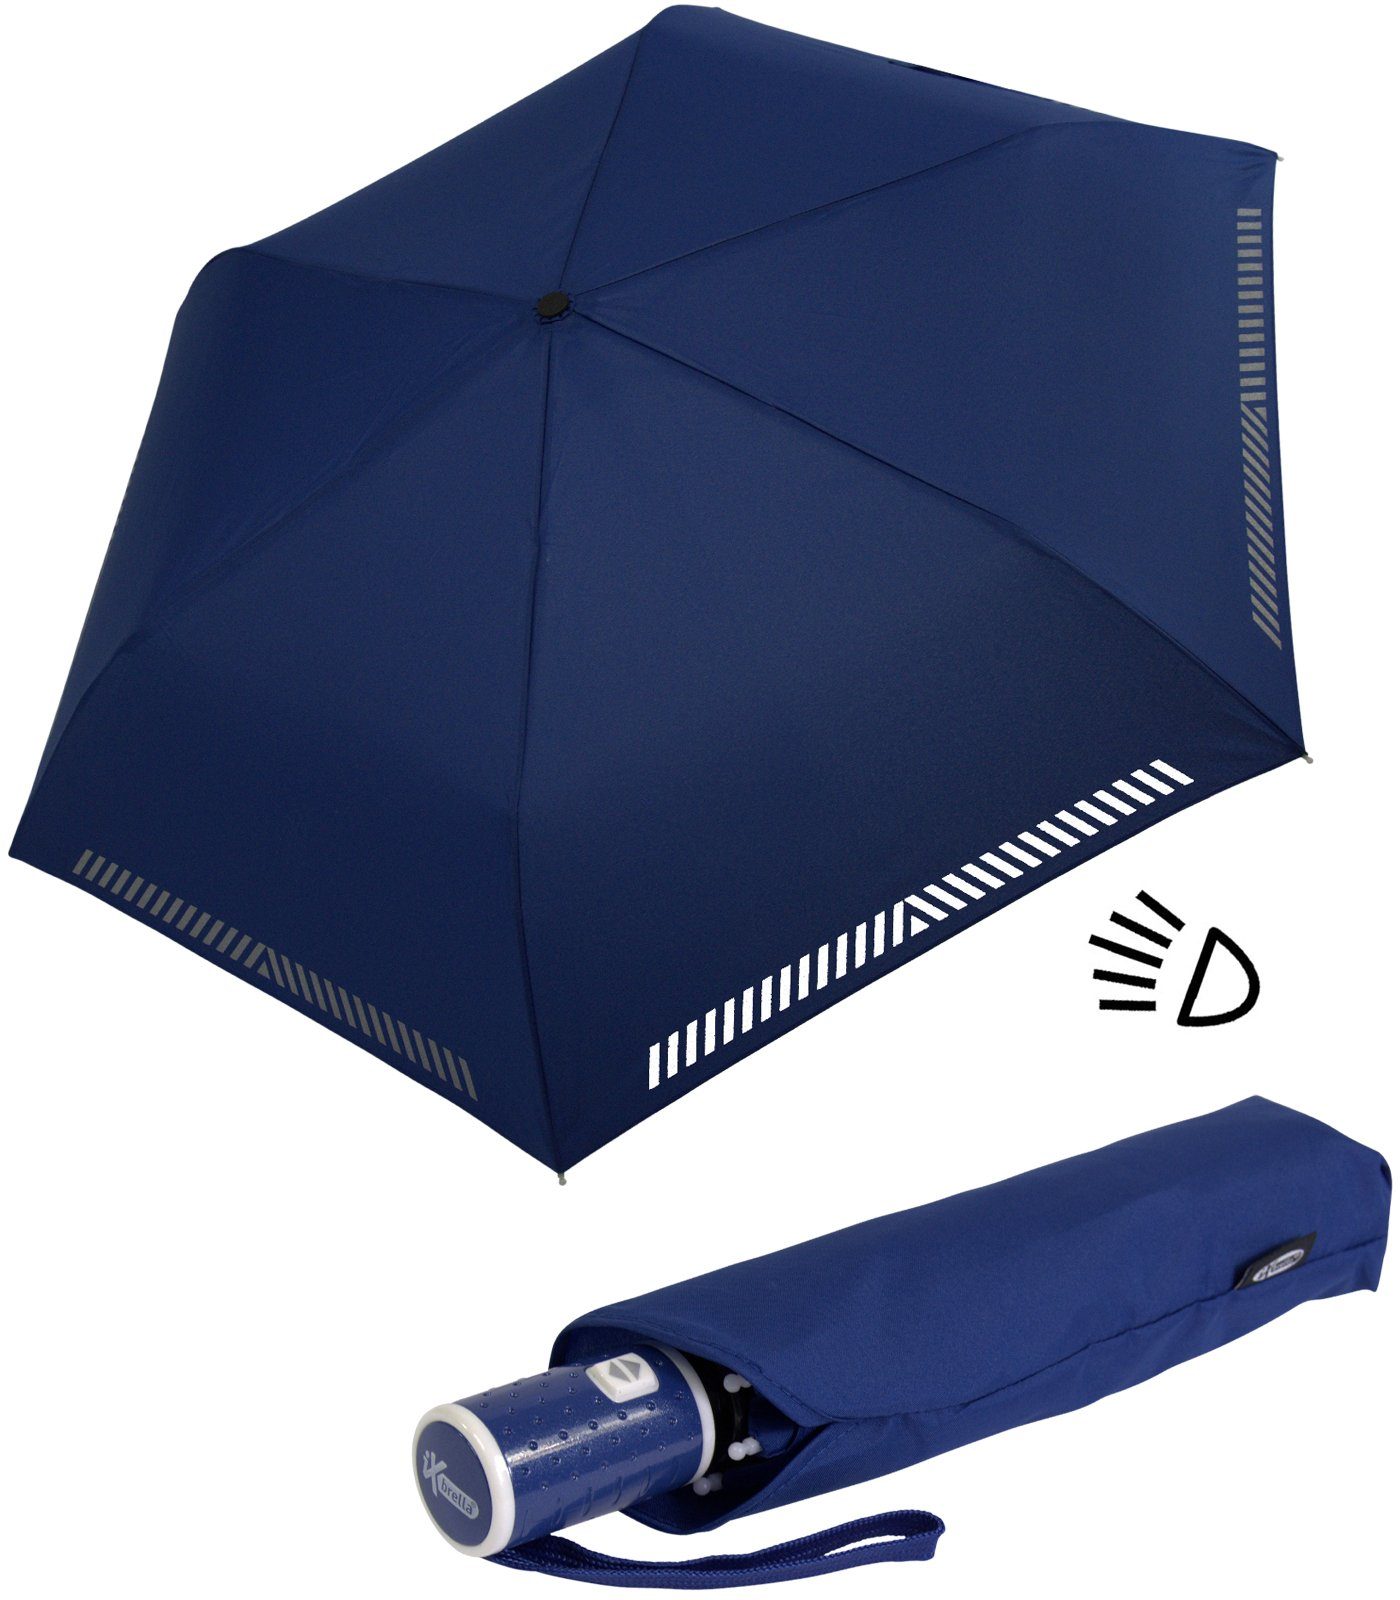 Dies ist eine Liste von iX-brella Taschenregenschirm Kinderschirm Reflex-Streifen reflektierend, - durch Auf-Zu-Automatik, mit Sicherheit blau